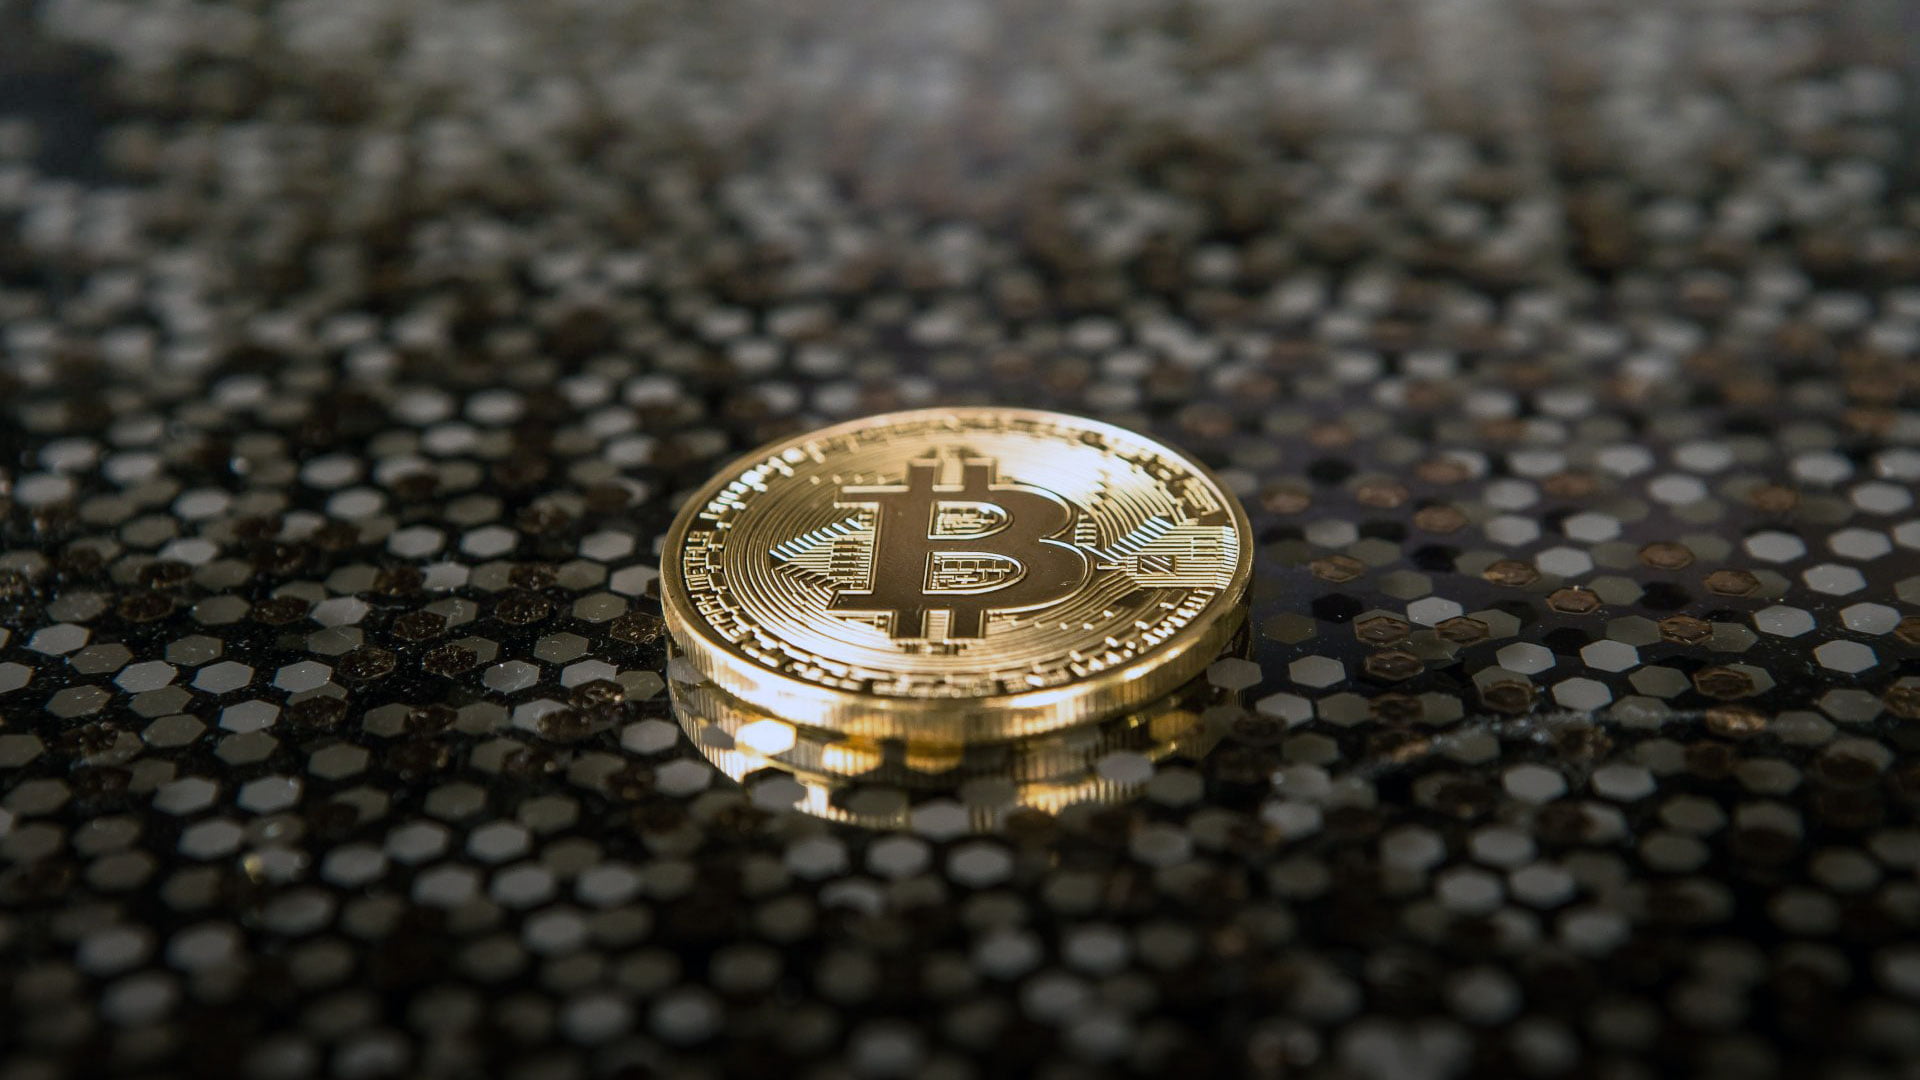 Análise de Preço do Bitcoin: Aumento Sutil para US$ 37.796 Indica Sentimento Positivo